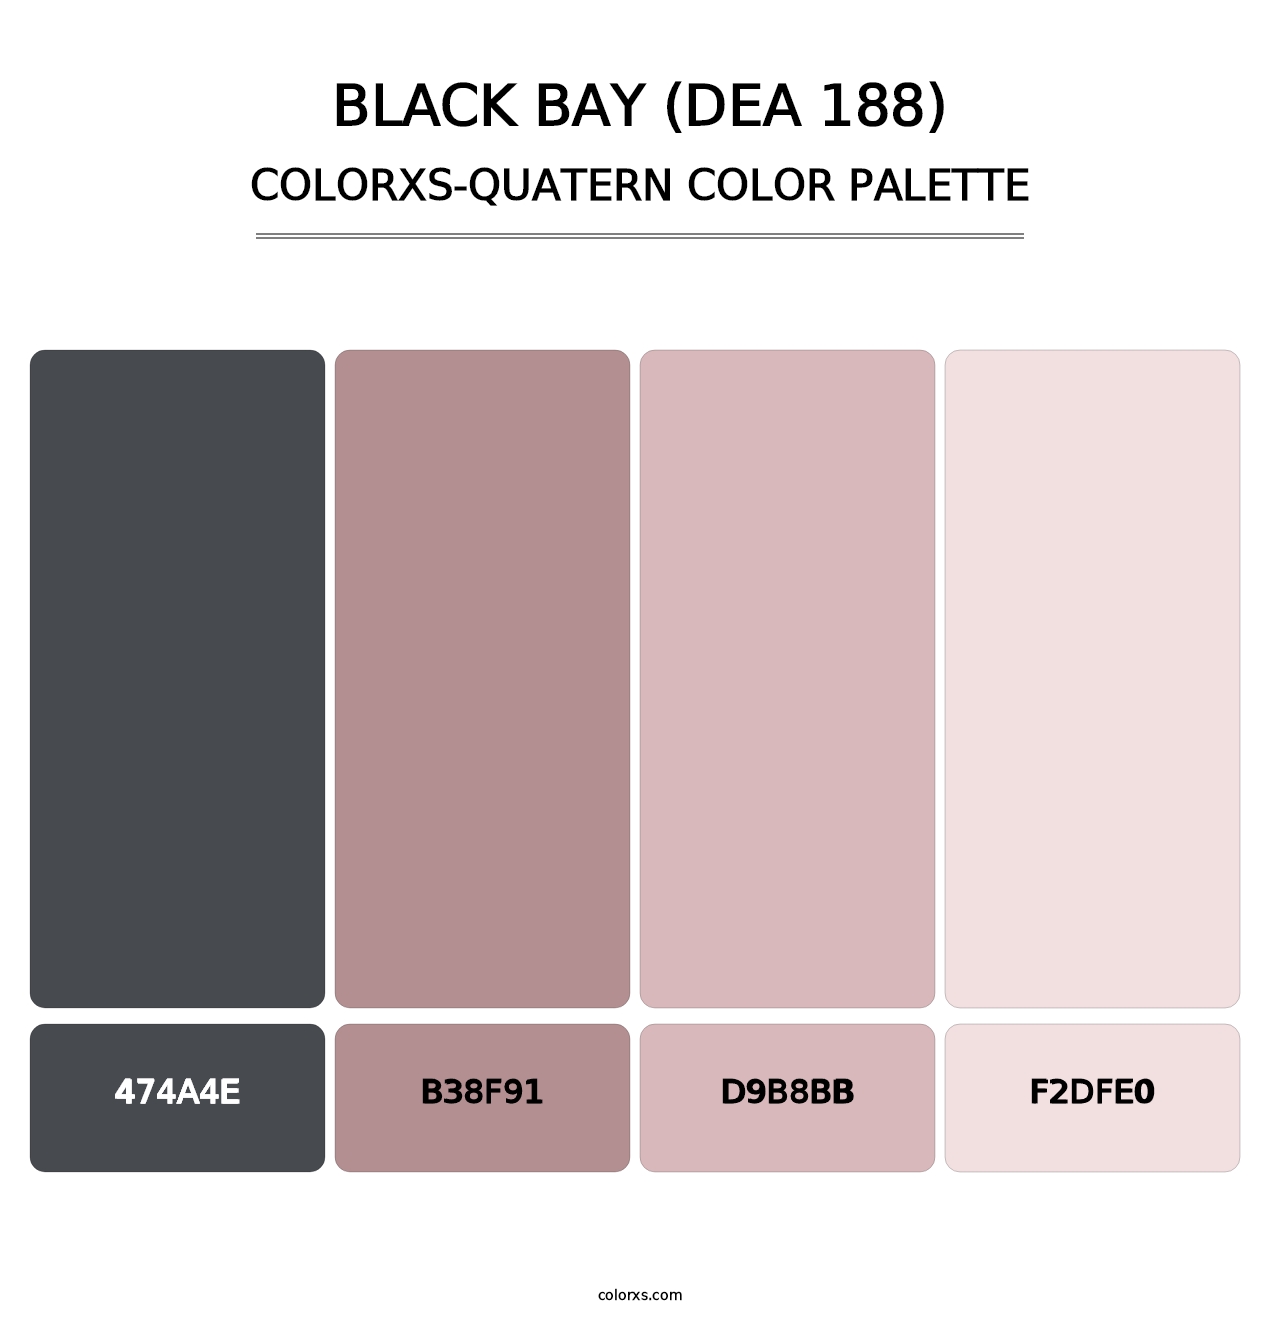 Black Bay (DEA 188) - Colorxs Quatern Palette